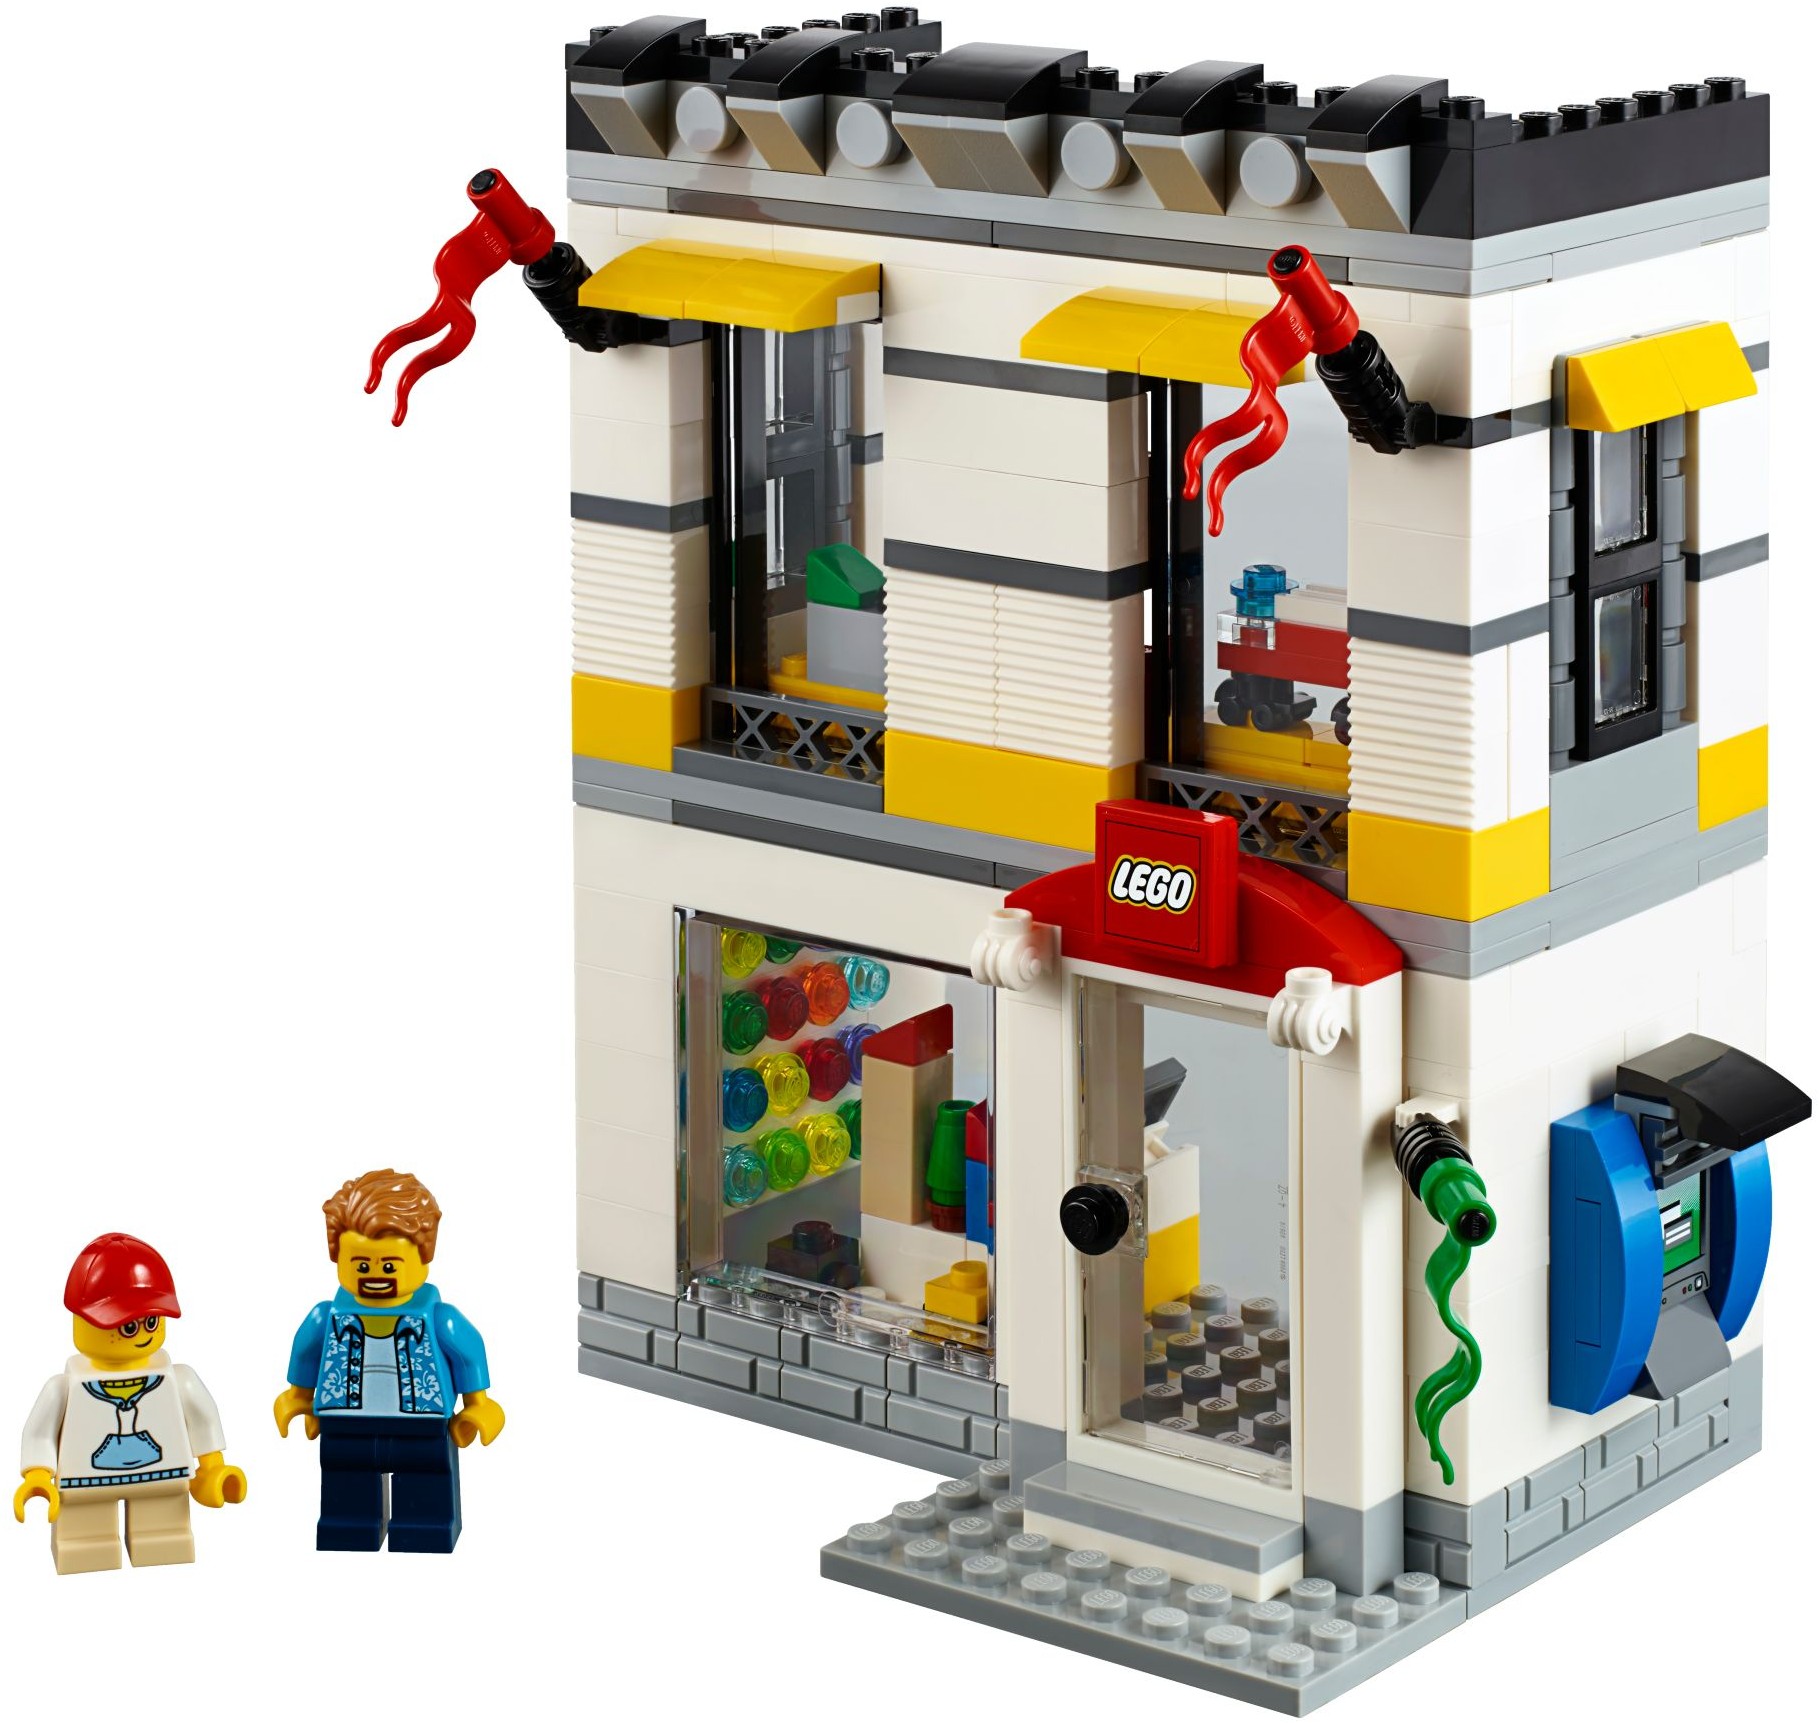 40305 LEGO Brand Store revealed Brickset LEGO set guide and database